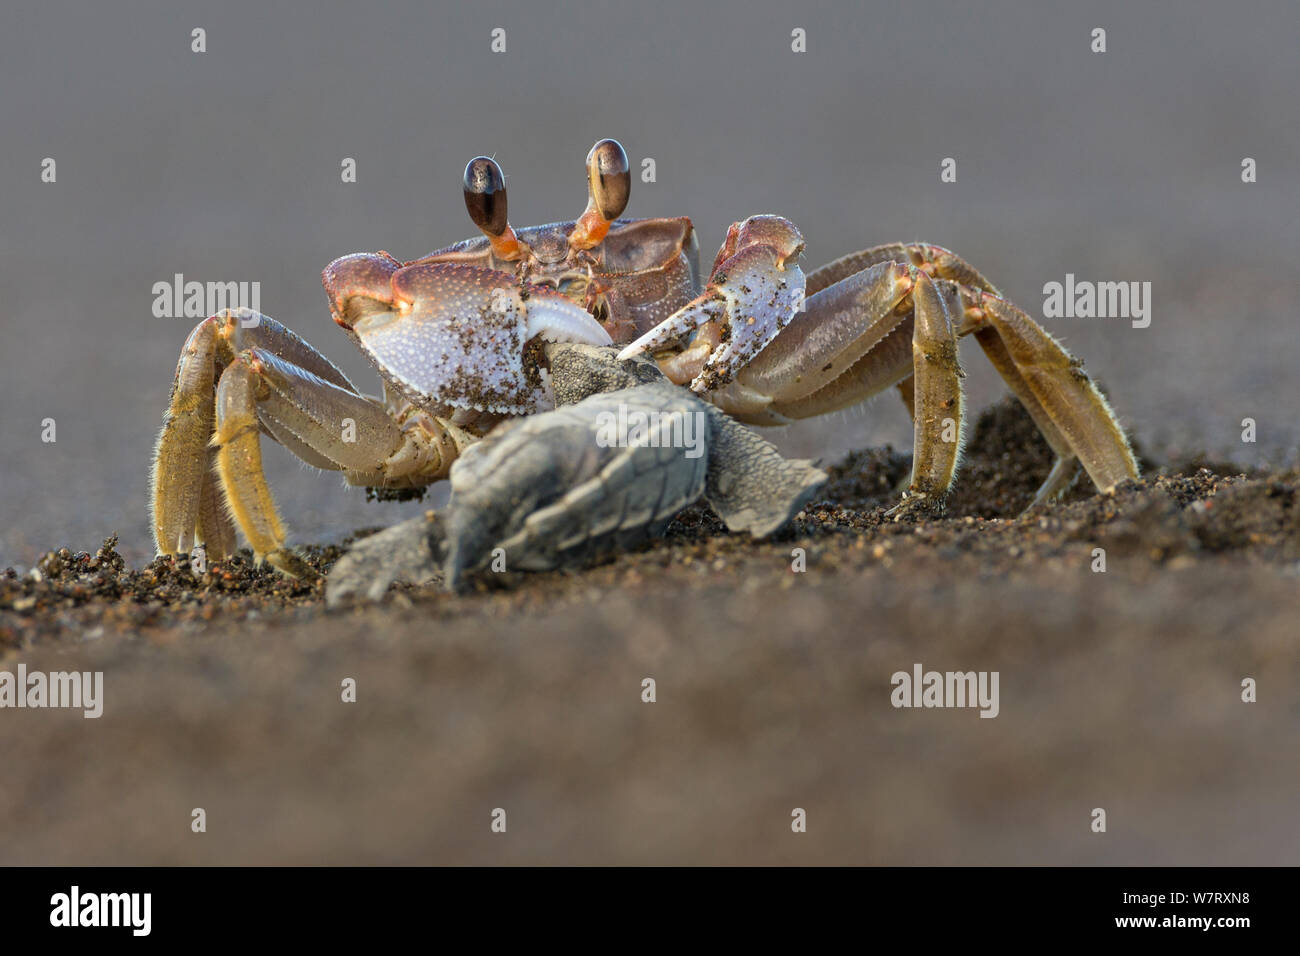 Crabe violoniste Uca (sp) sur l'alimentation des nouveau-nés de tortues olivâtres (Lepidochelys olivacea) Côte du Pacifique, Playa Ostional, Costa Rica. Banque D'Images